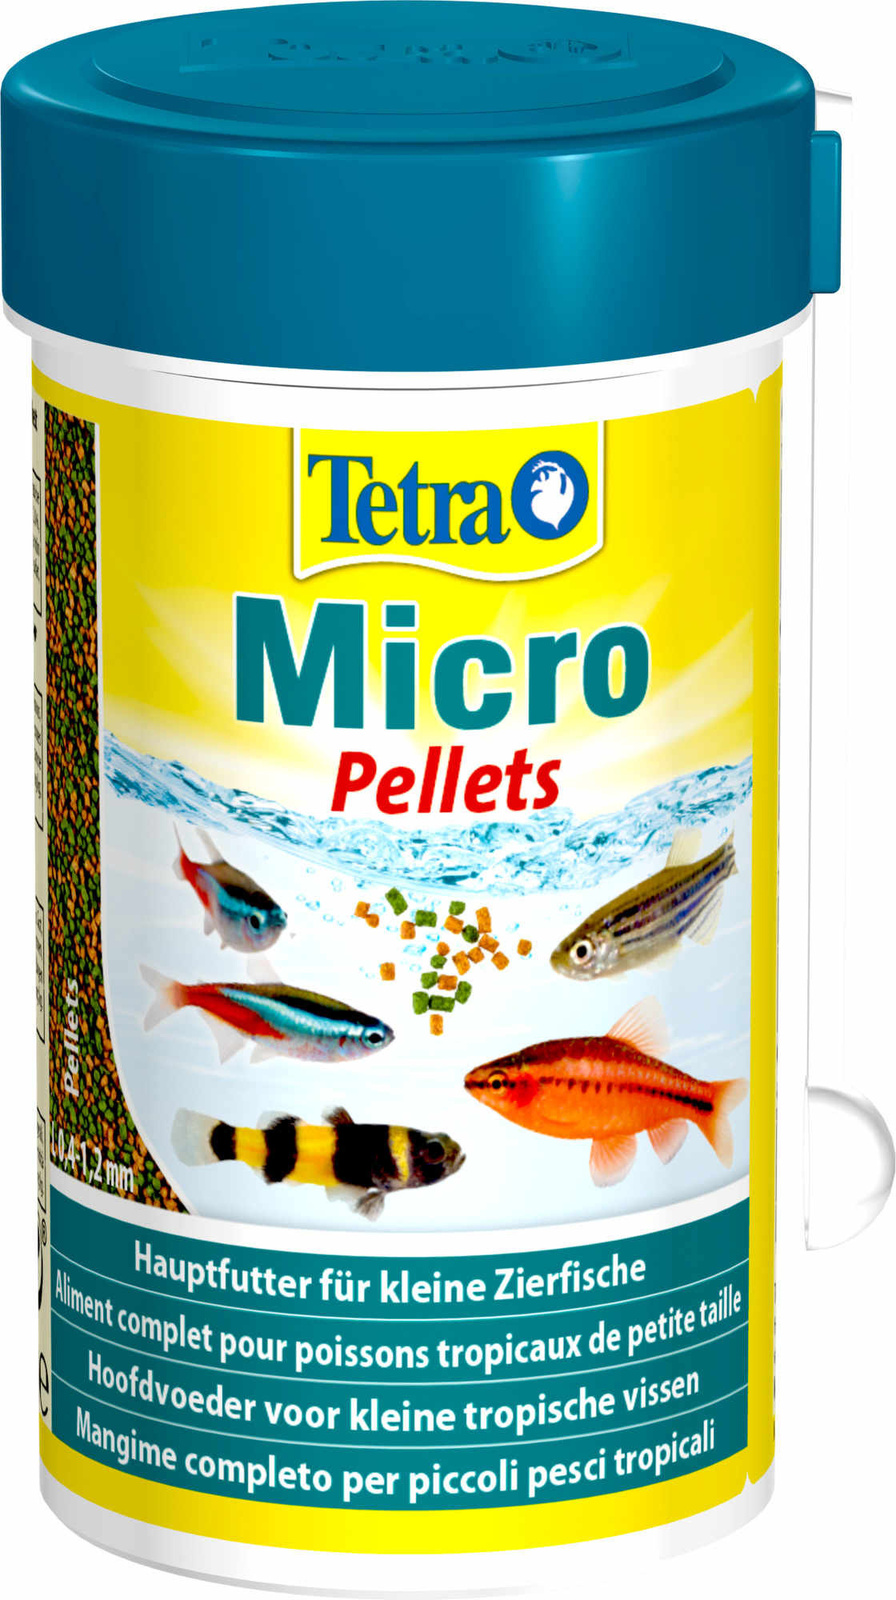 Tetra (корма) Tetra (корма) корм для для всех видов мелких рыб, микрошарики (65 г) tetra корма tetra корма корм для всех видов рыб мелкие гранулы 45 г